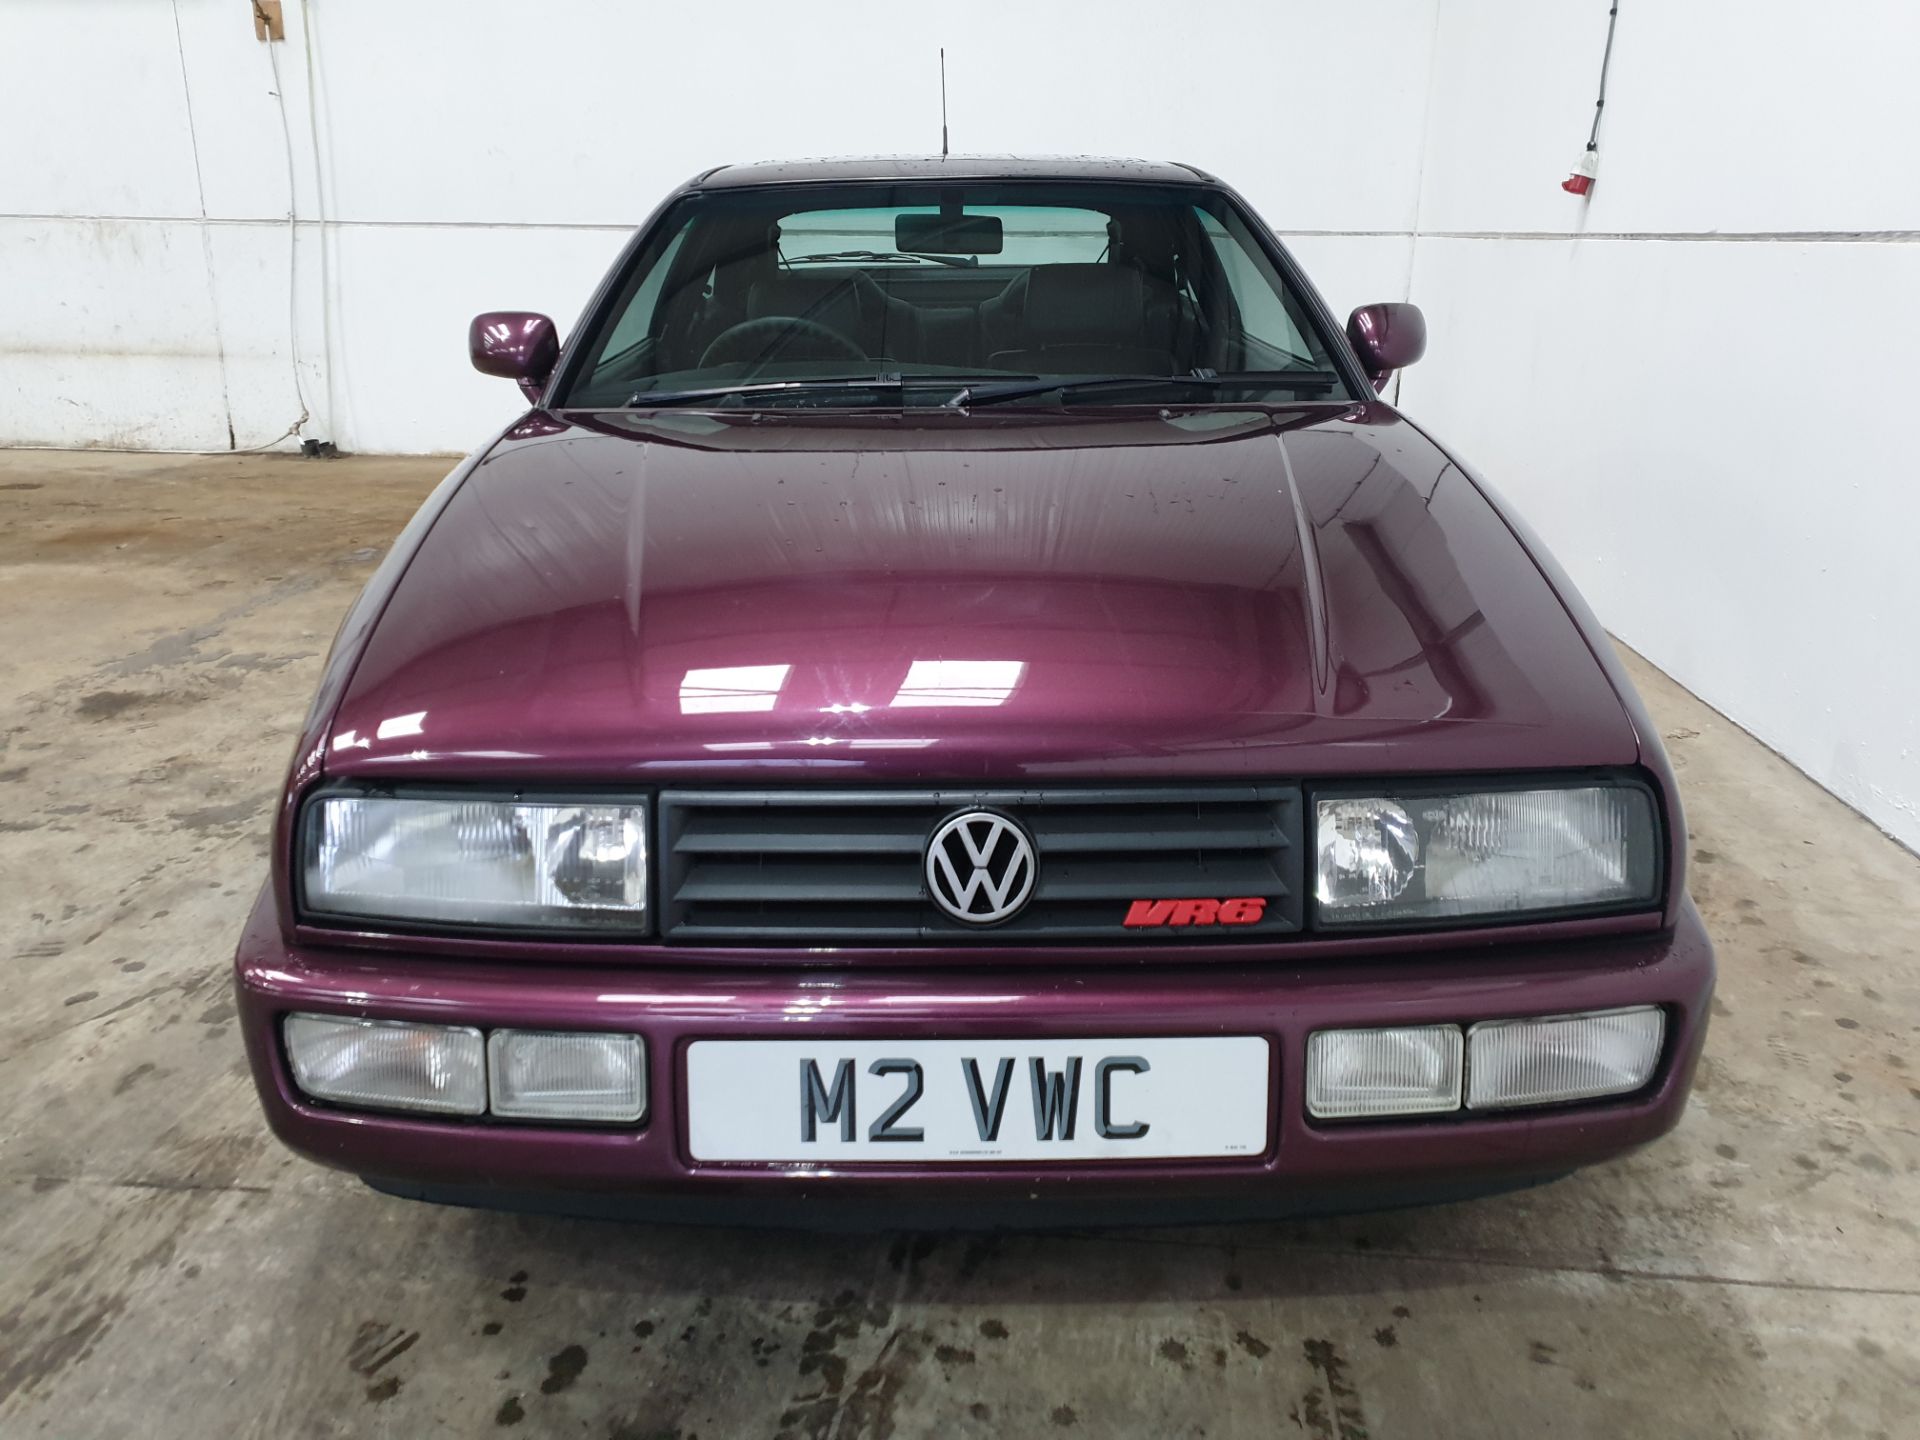 1995 VW Corrado VR6 - Image 8 of 14